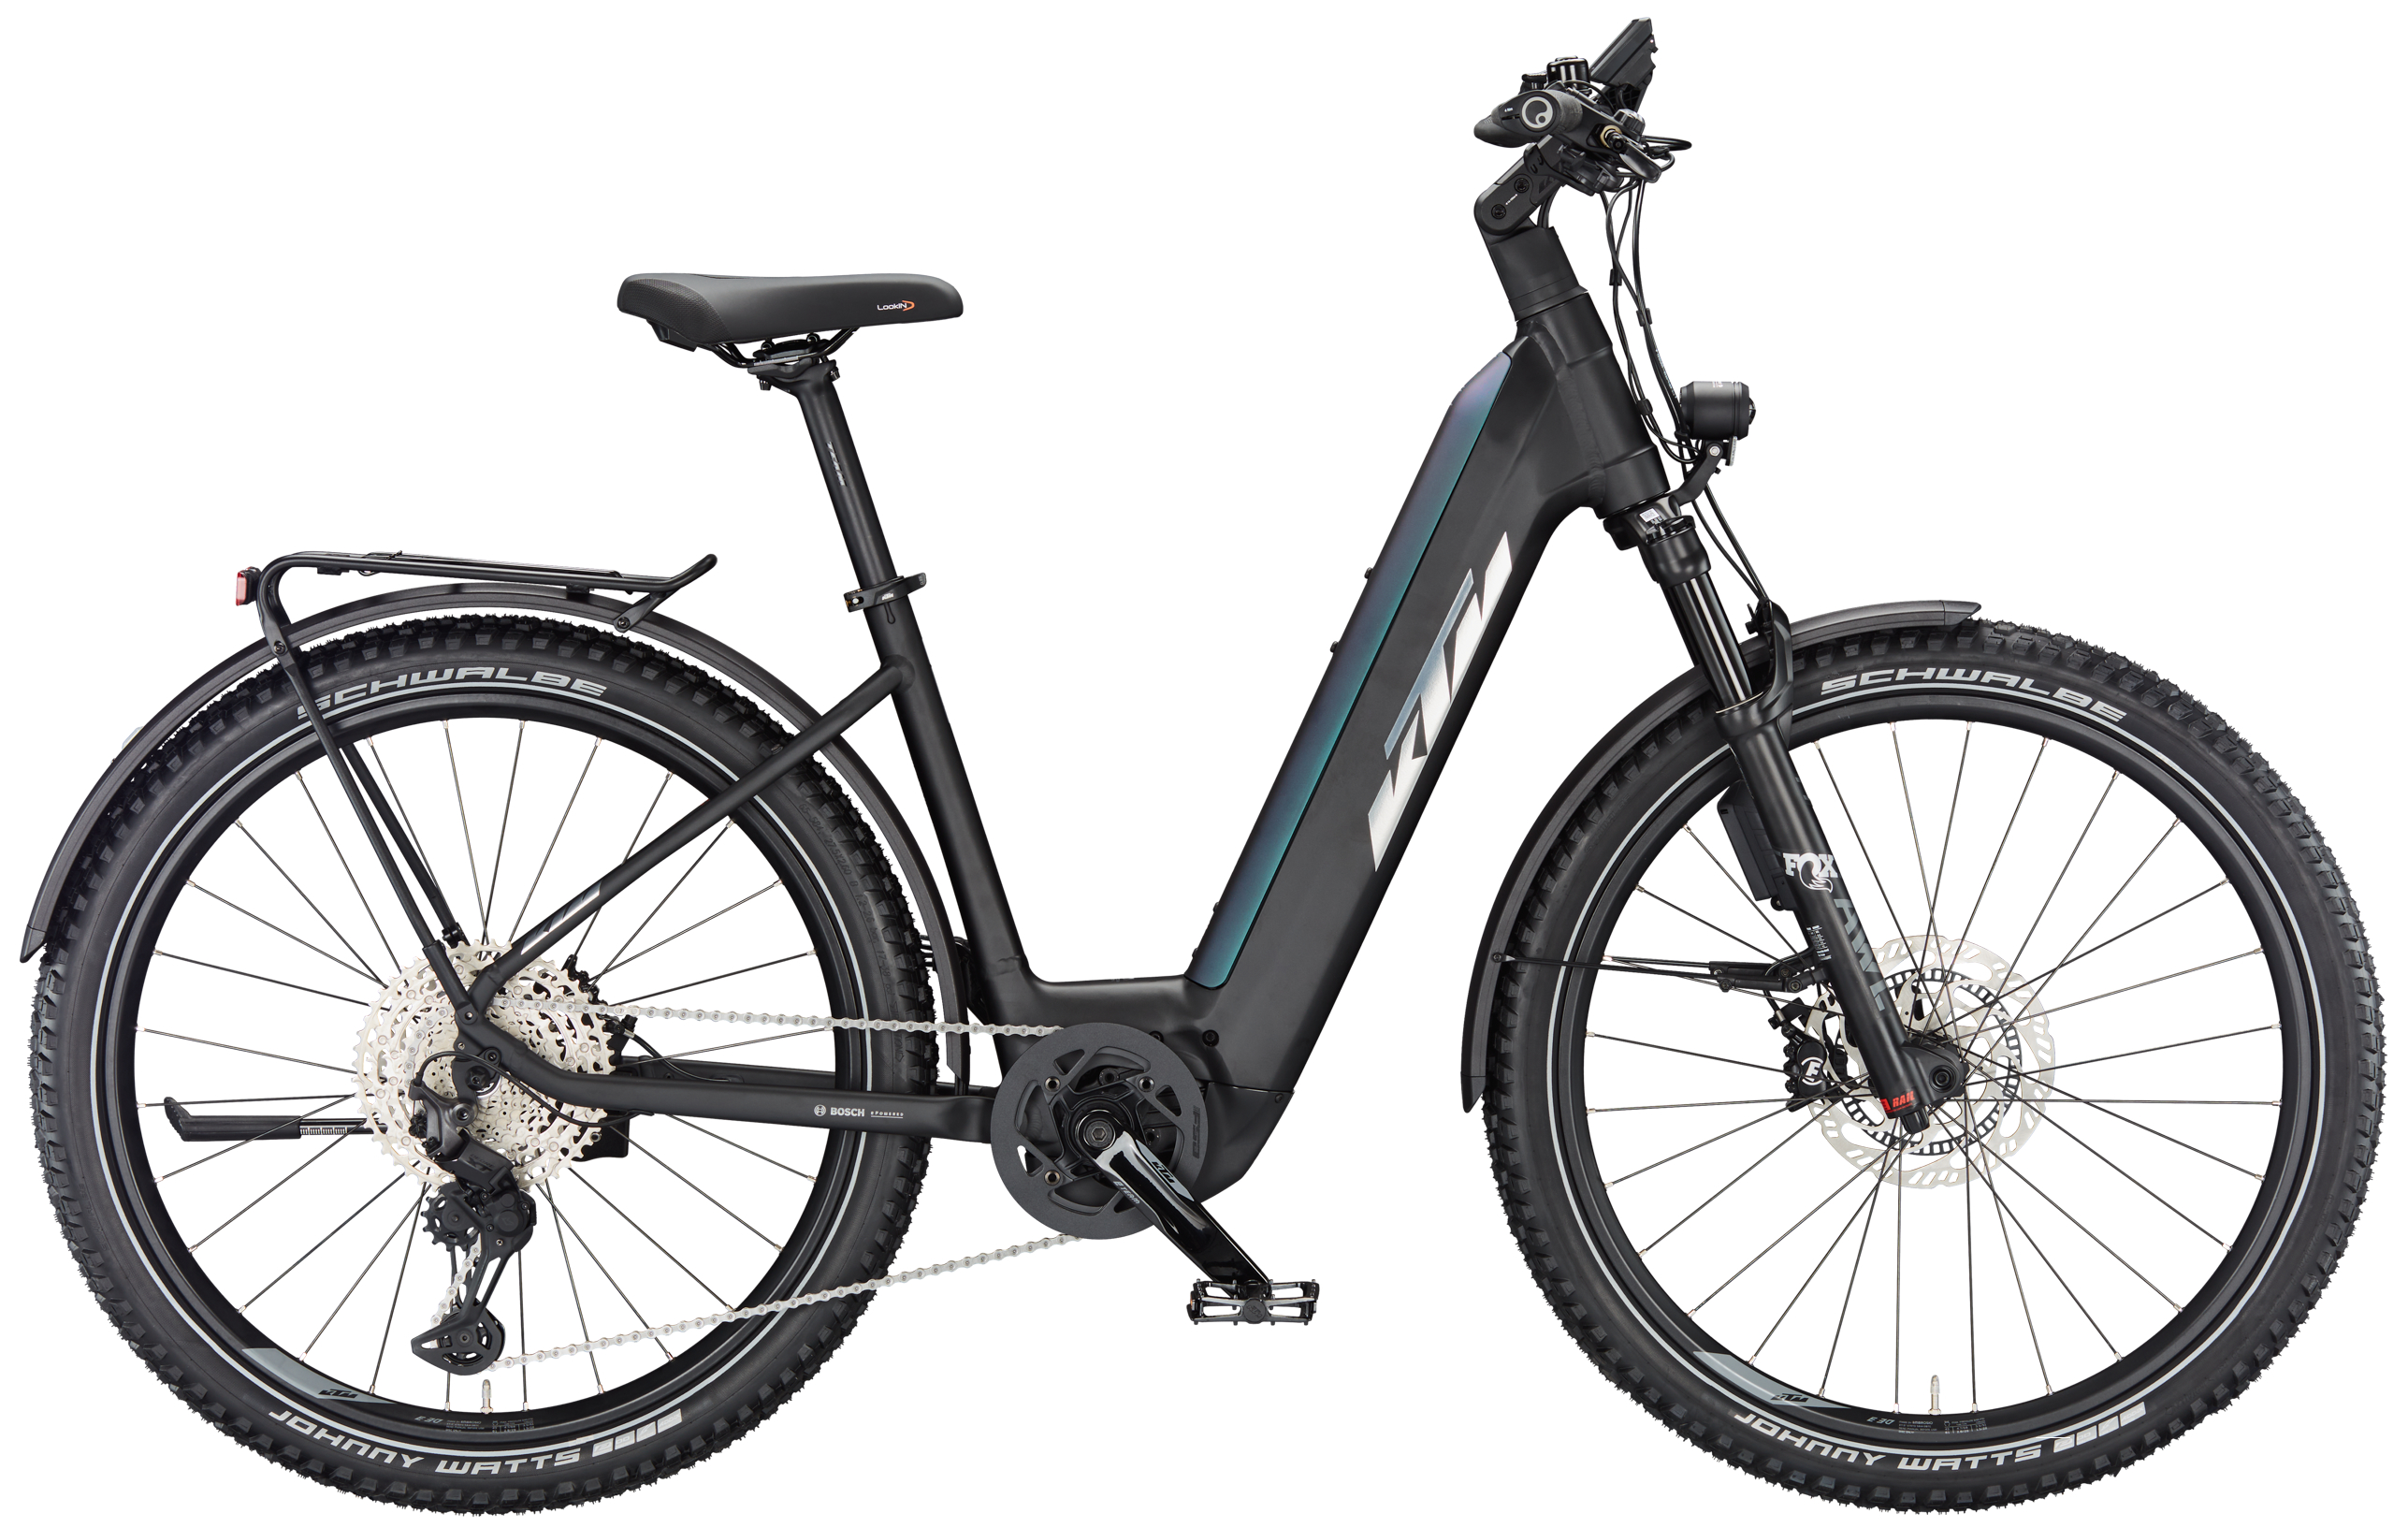 Portaequipajes Bicicleta, Ajustable Bicicleta Portabultos, Soporte Trasero  de Bicicleta Adecuado Aleación de Aluminio,para Bicicletas De 24 a 29